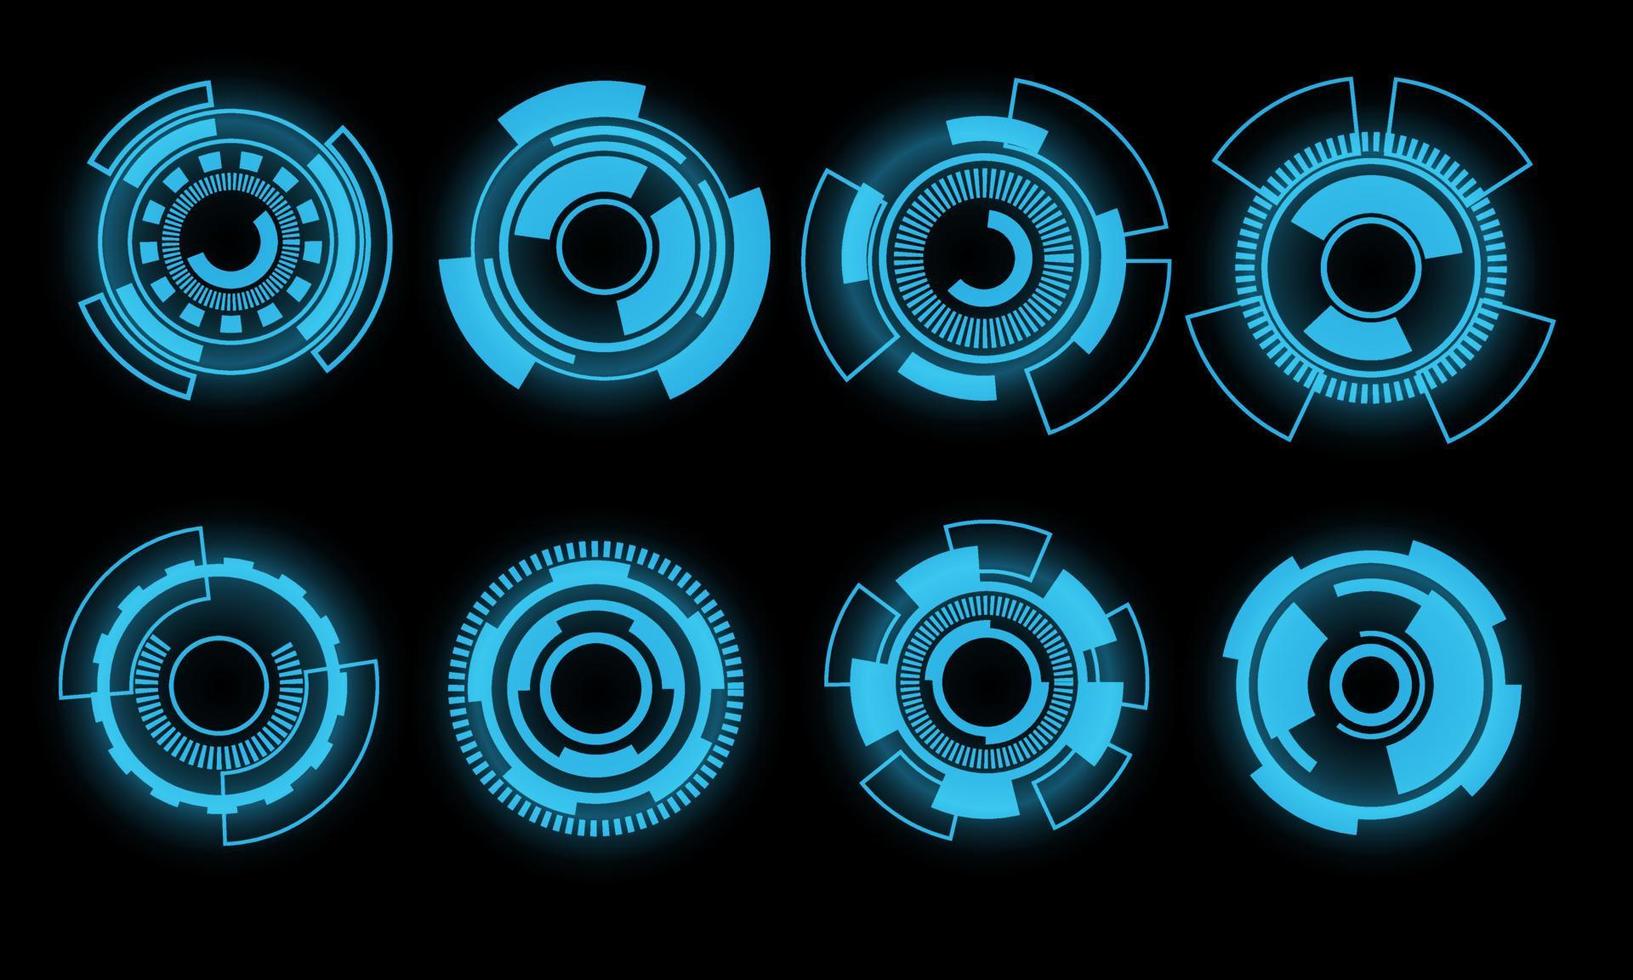 ensemble de hud cercle moderne utilisateur interface éléments conception La technologie cyber bleu sur noir futuriste vecteur